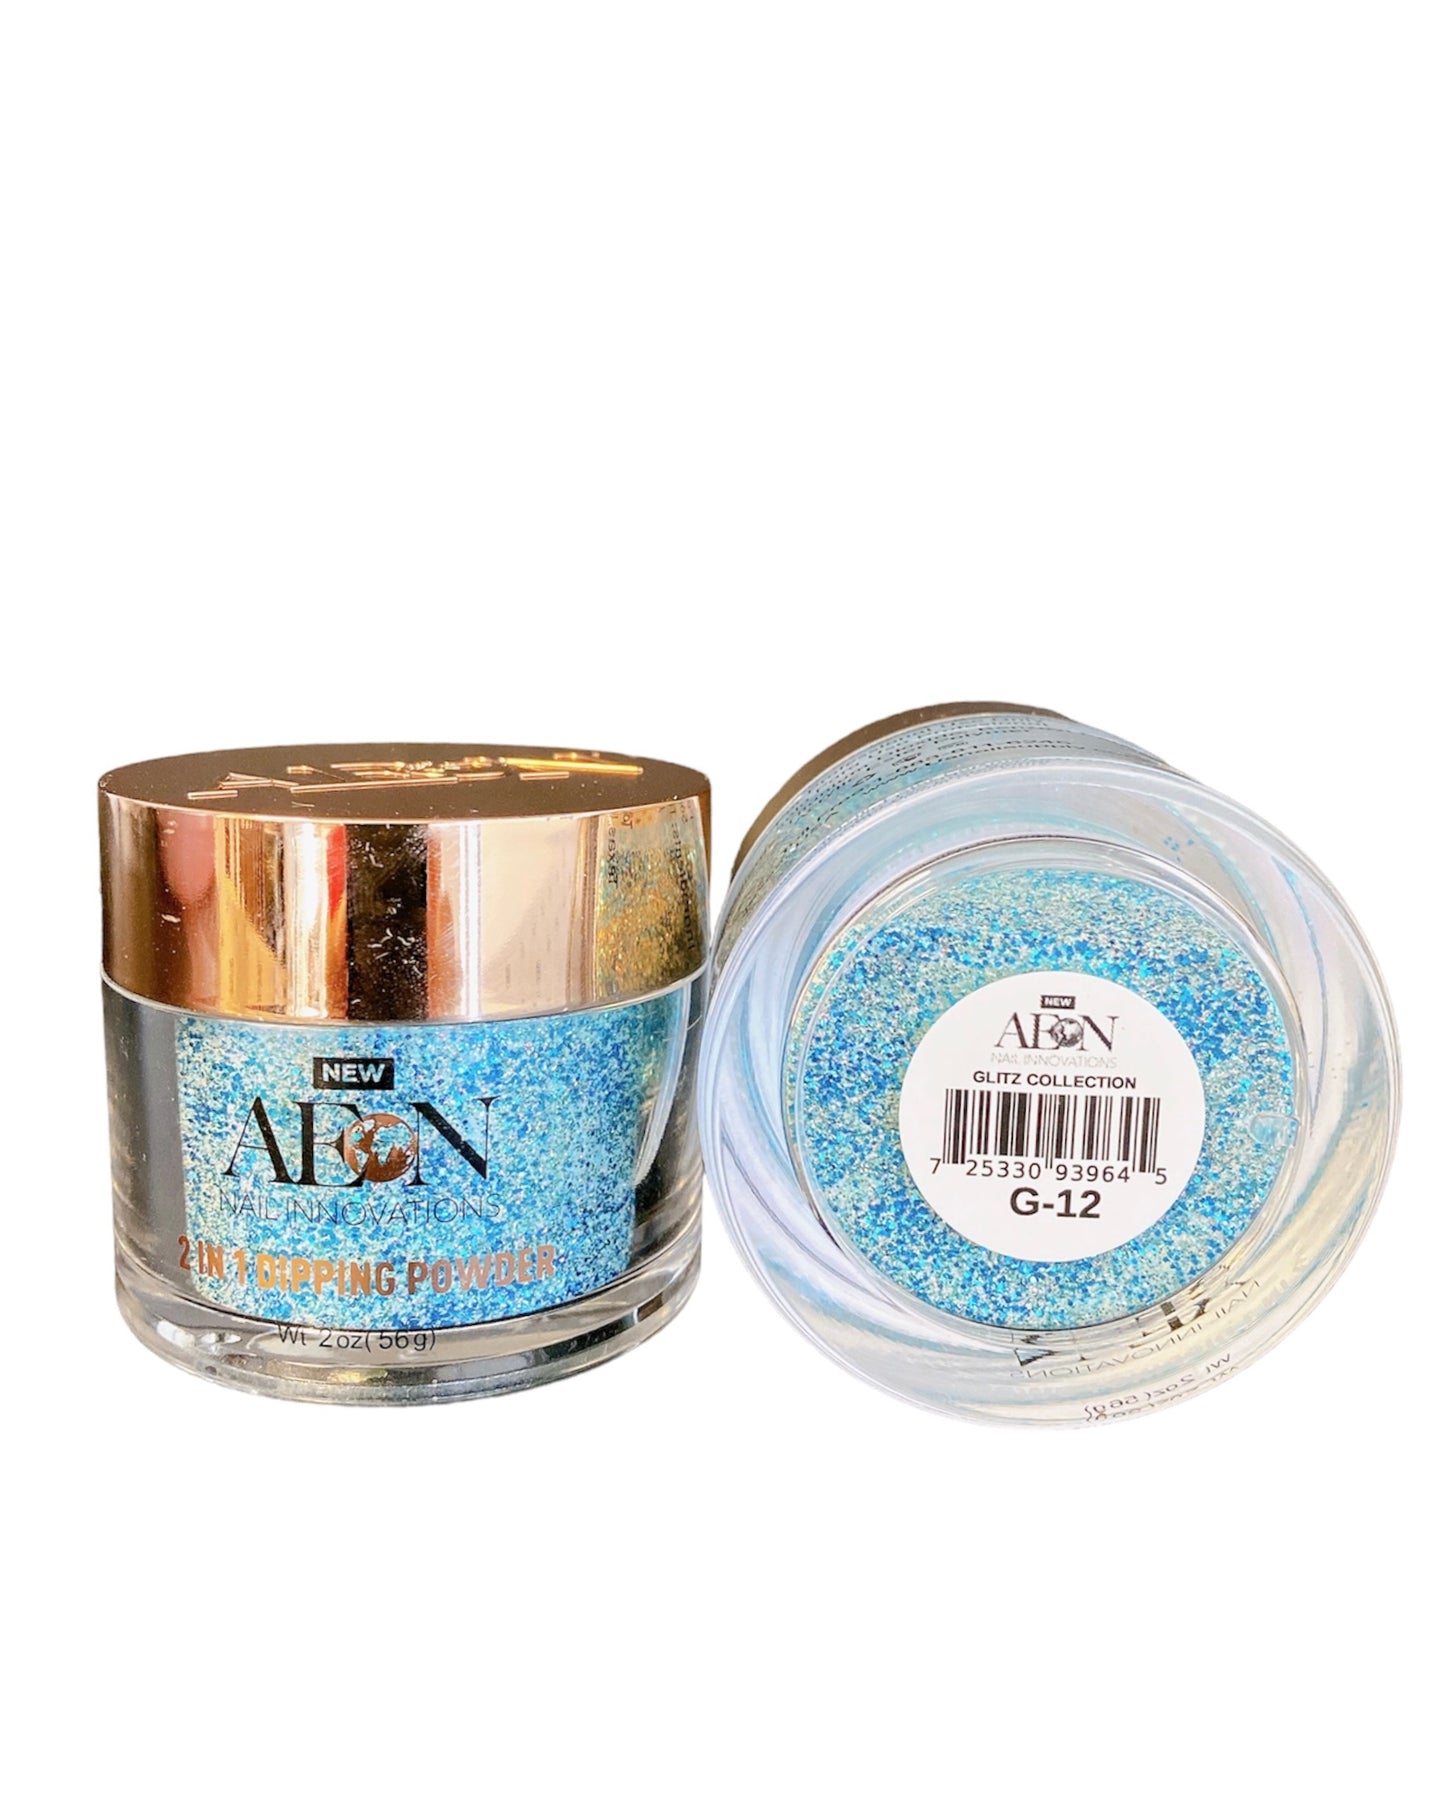 Aeon Glitter -  2 oz - #G-12 - Premier Nail Supply 